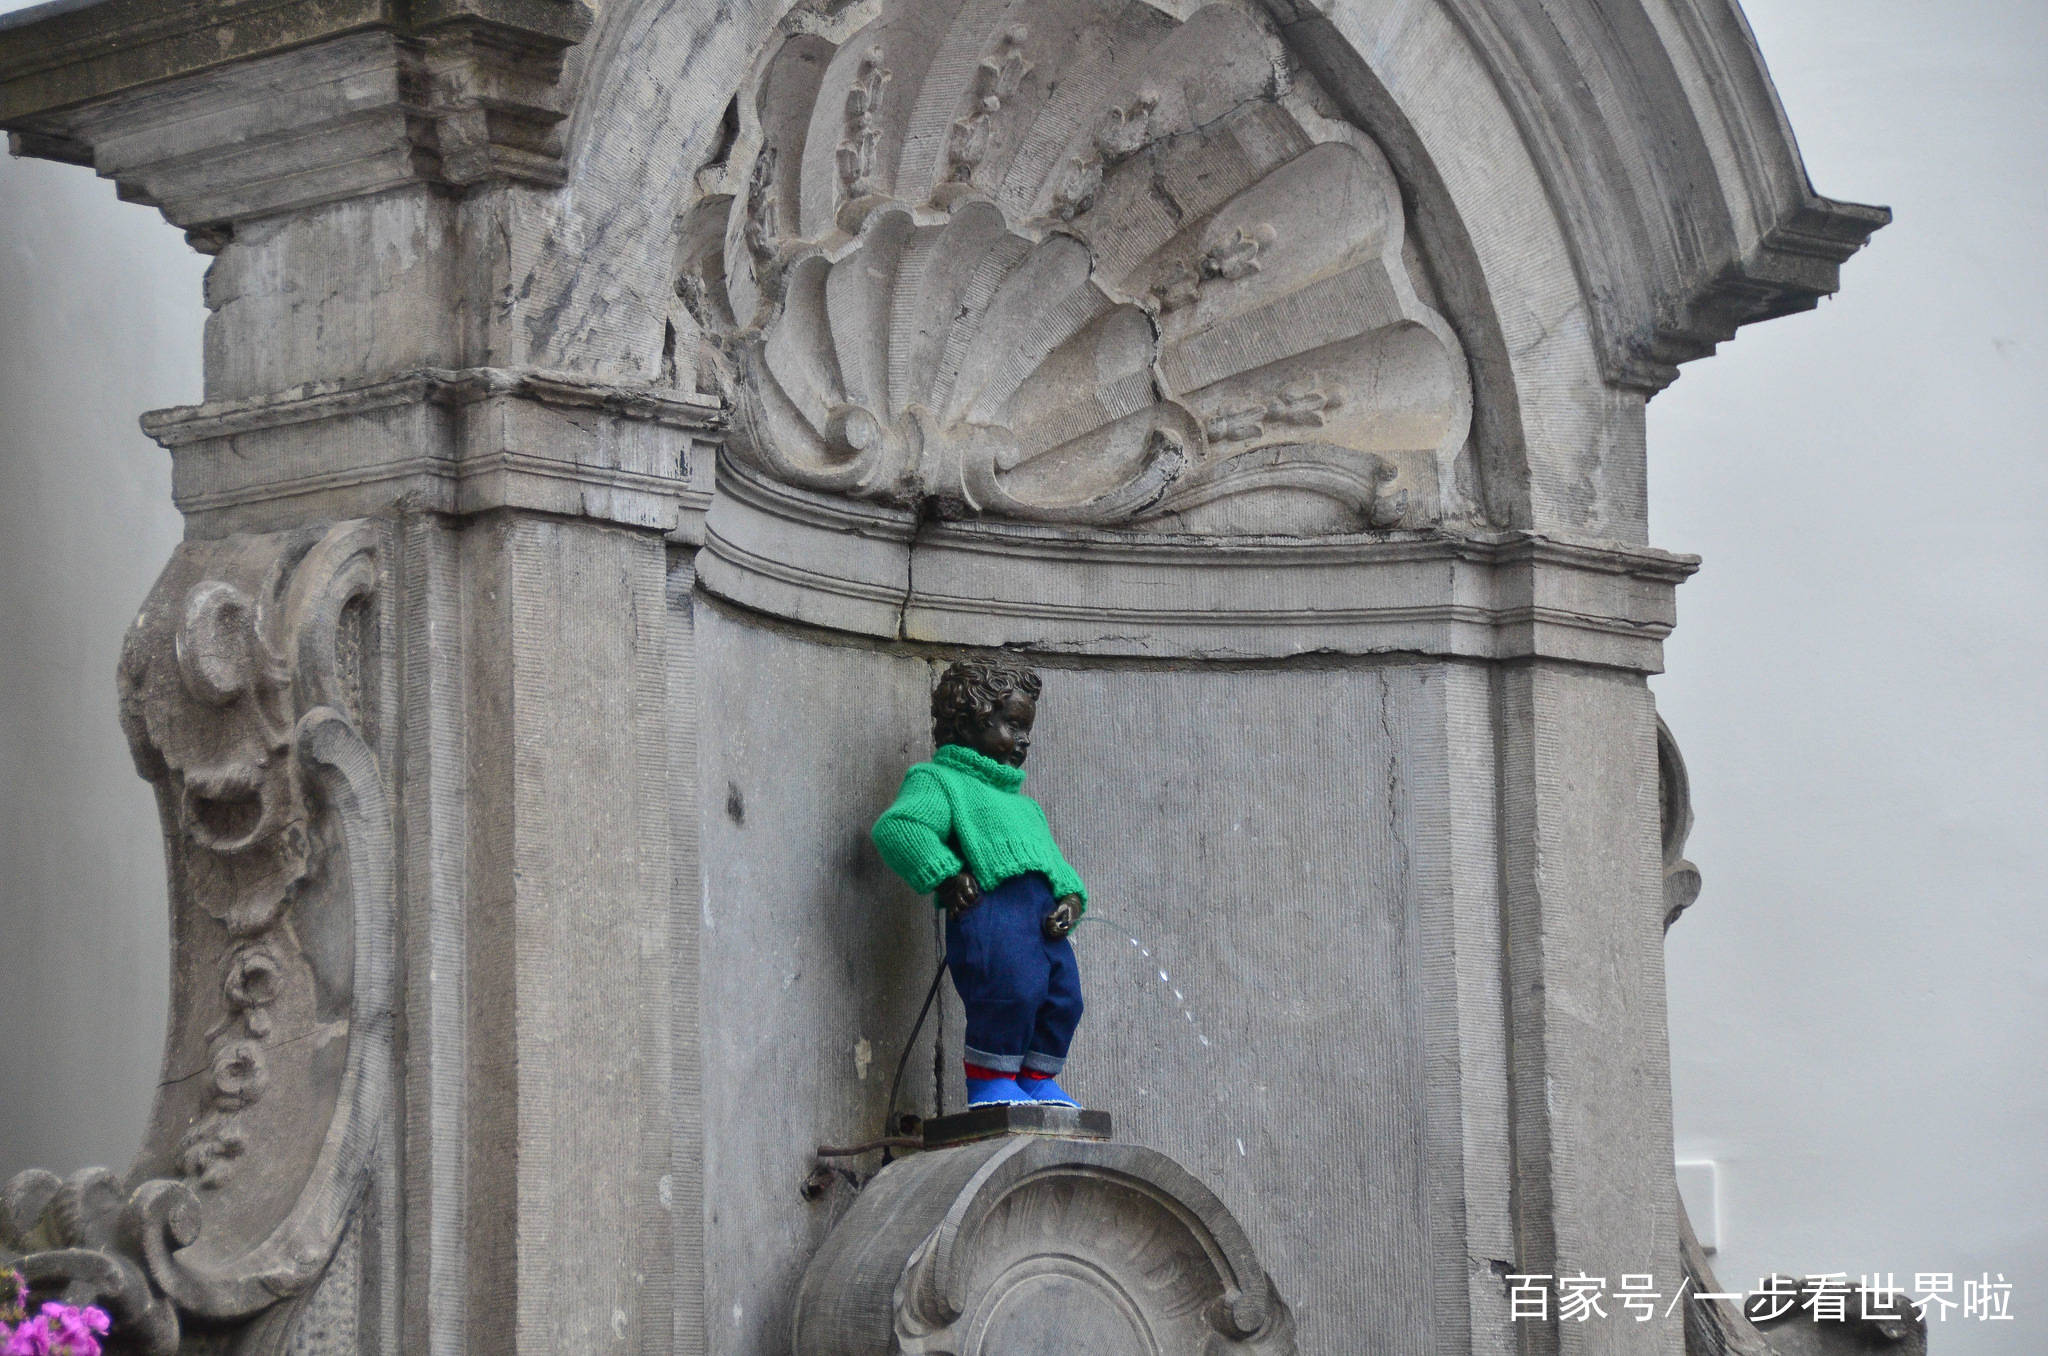 这个小男孩在广场上尿了数百年,如今各国政要都会给他送衣服